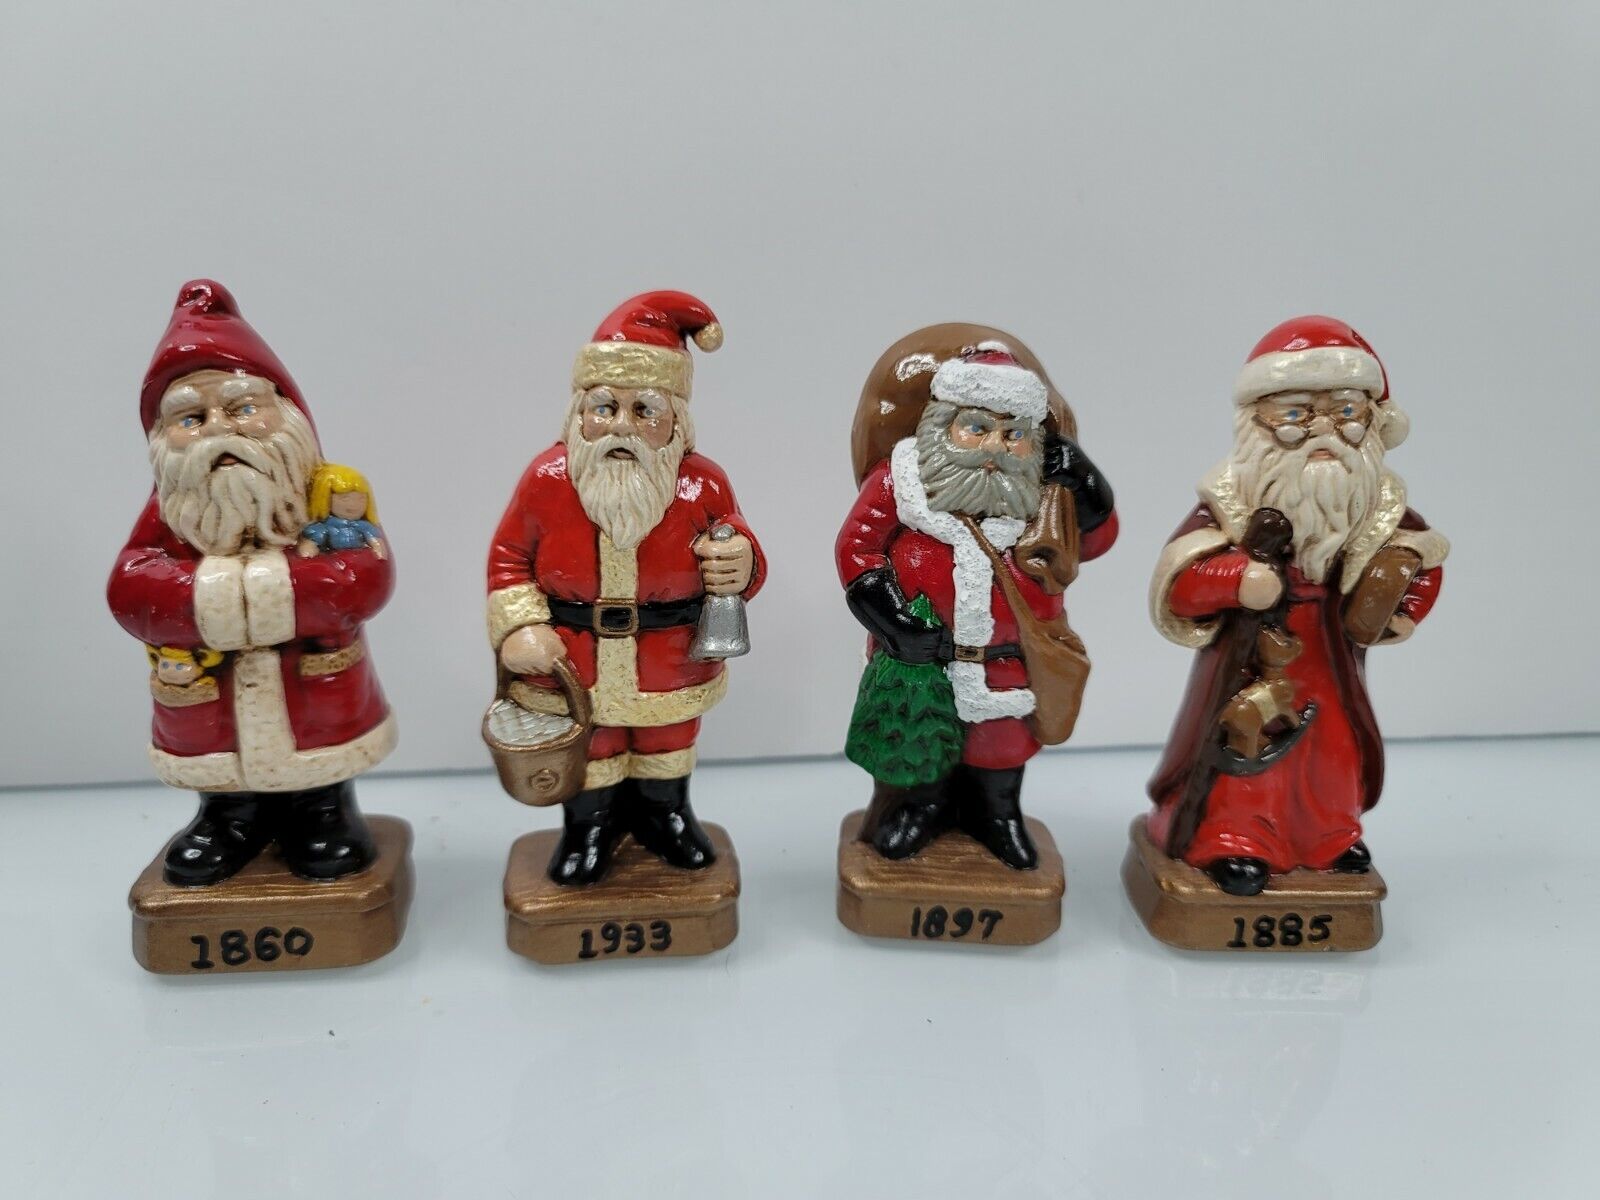 5 -1860 - 1885 - 1897 - 1933 Era Santa Ceramic Figurine Ornament Christmas Decor